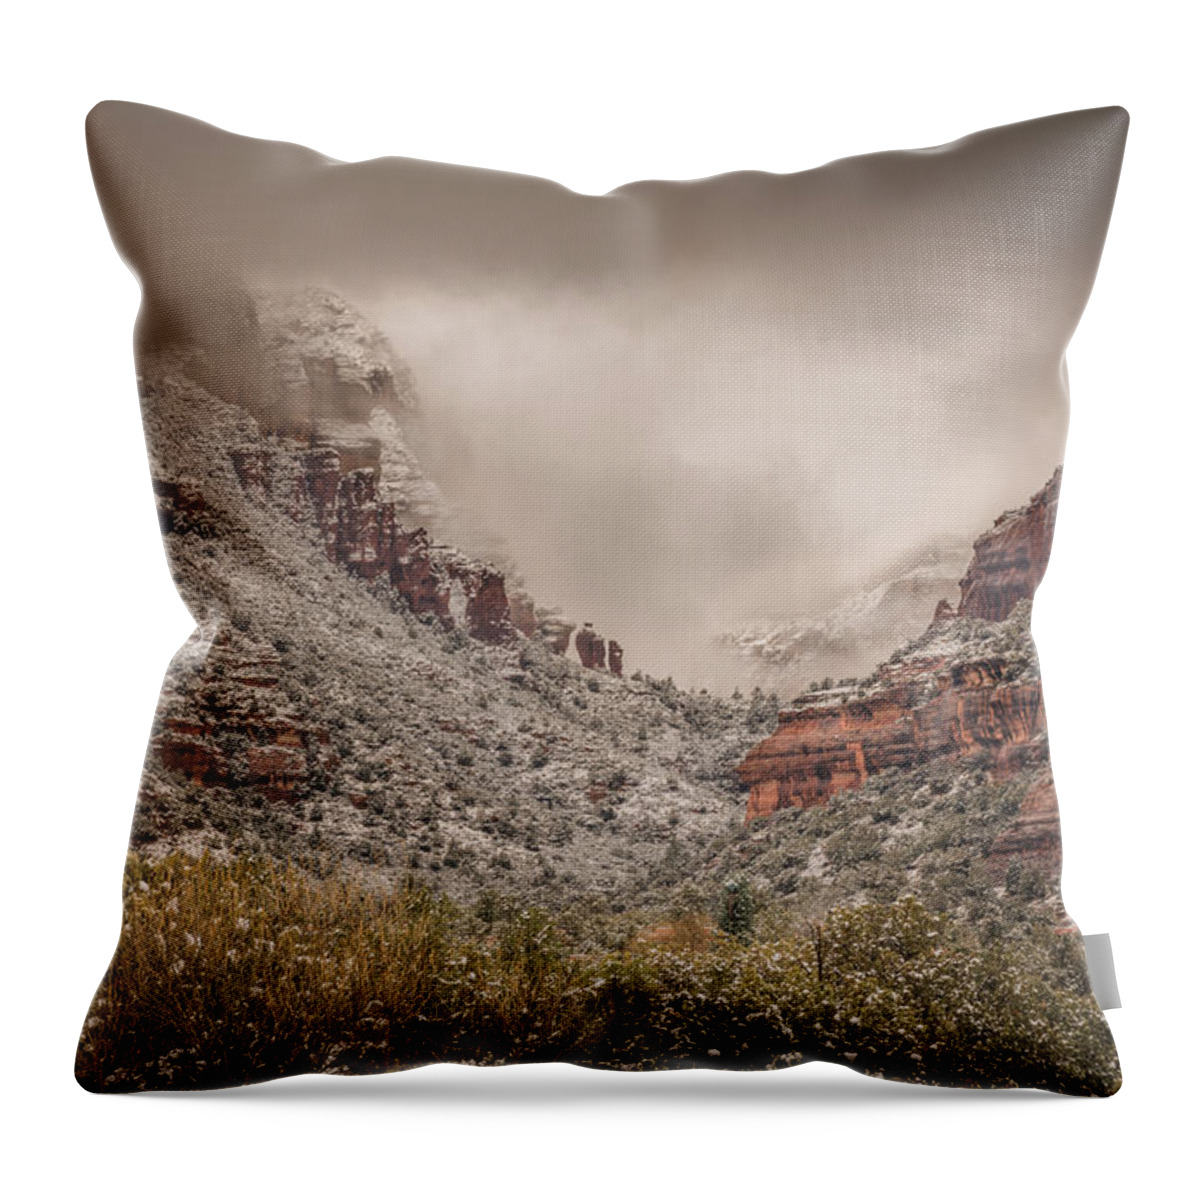 Boynton Canyon Throw Pillow featuring the photograph Boynton Canyon Arizona by Racheal Christian